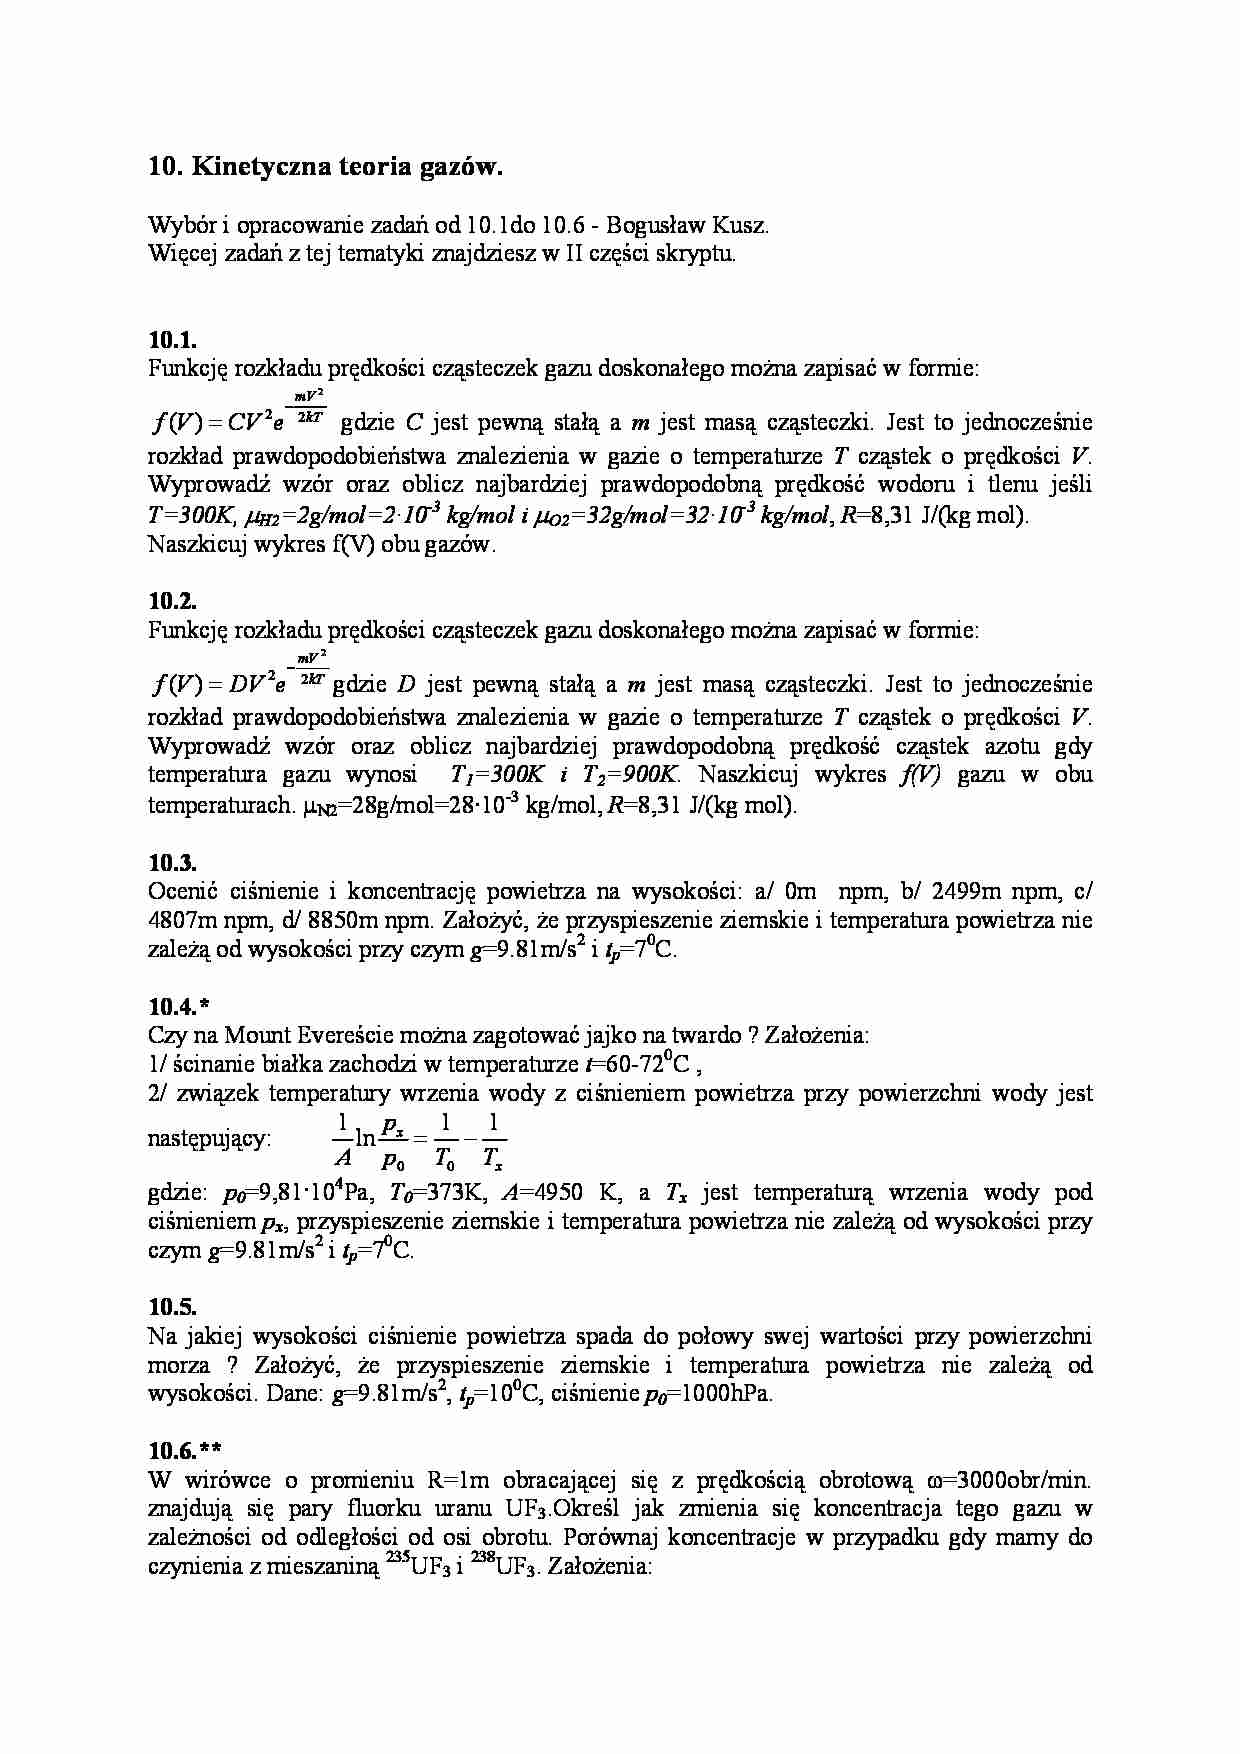 Kinetyczna teoria gazow - strona 1